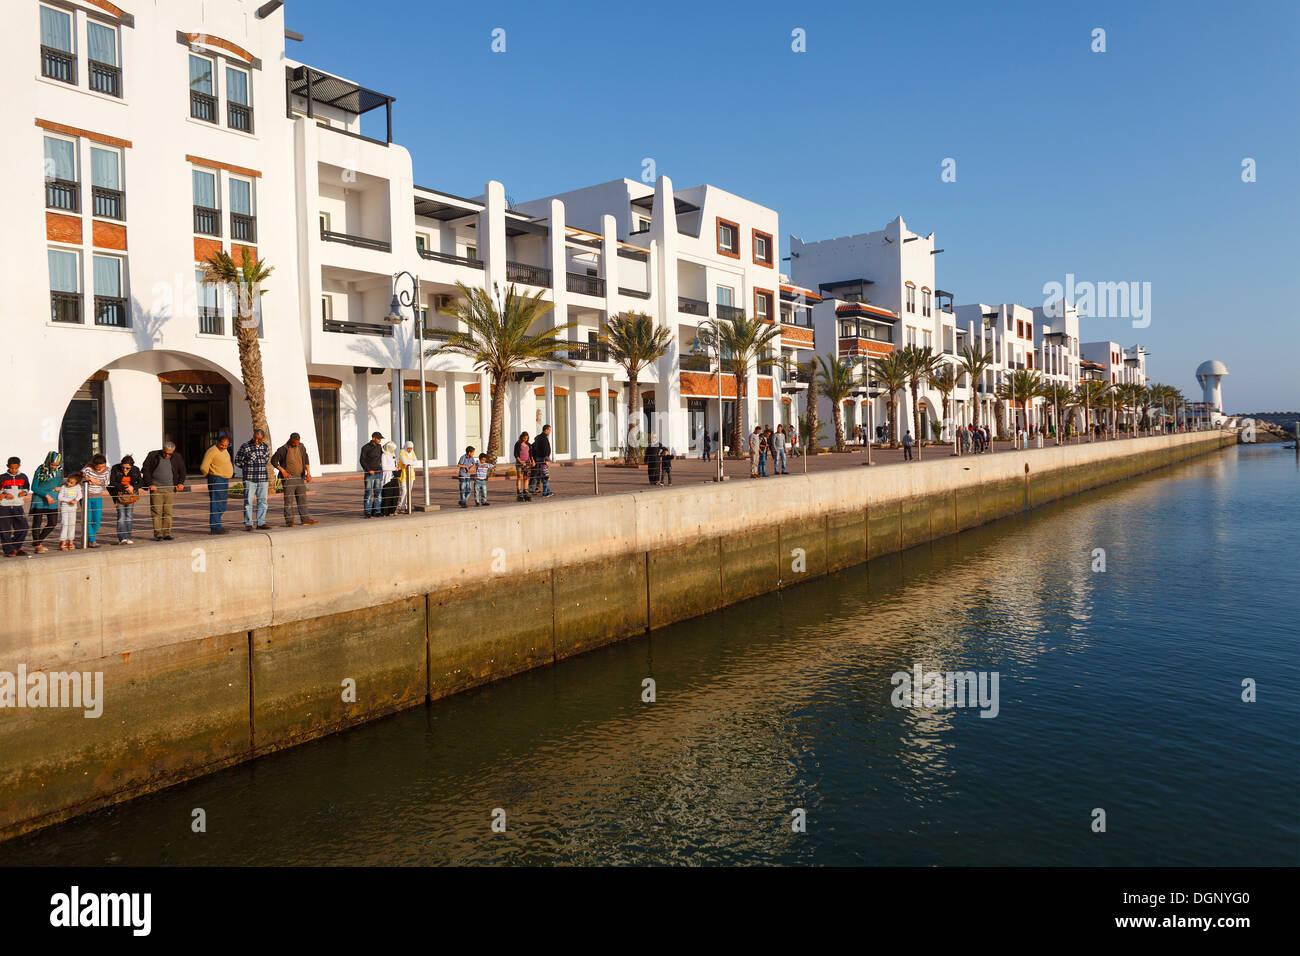 Marina, Agadir port Stock Photo - Alamy